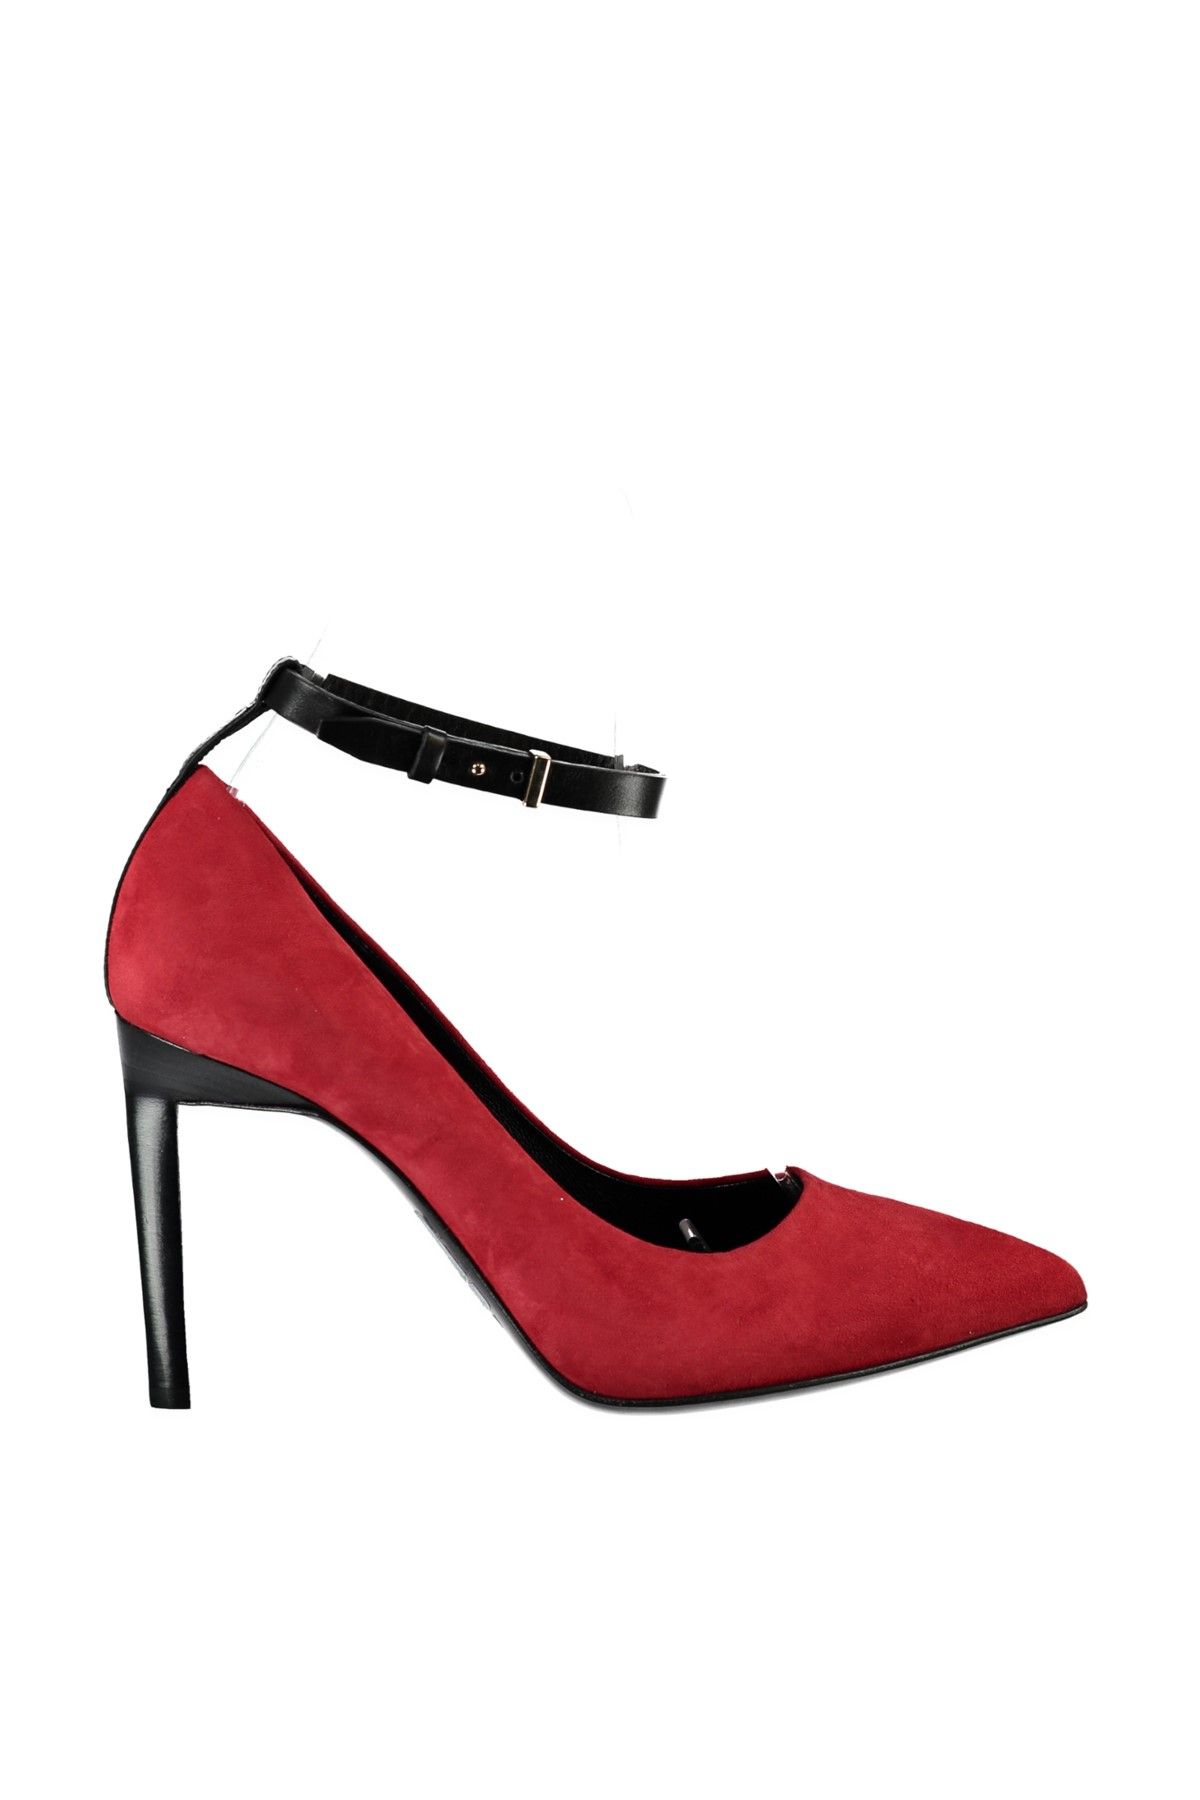 Roberto Cavalli Kadın Kırmızı Klasik Topuklu Ayakkabı Wps157Pm050